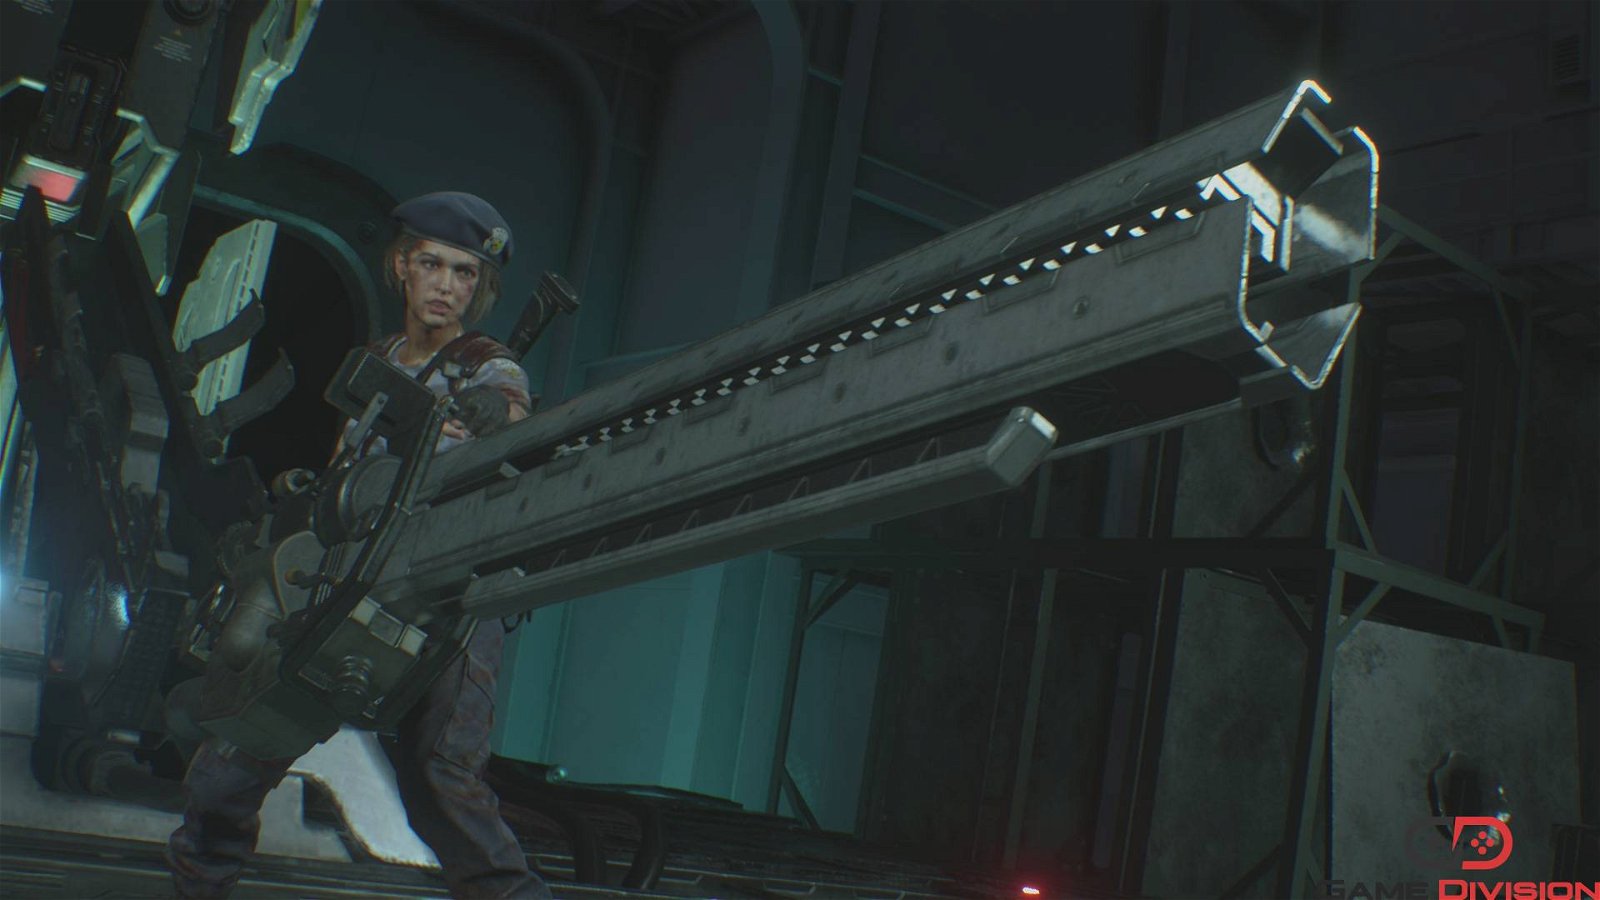 Immagine di Resident Evil 3, Trucchi: munizioni e vita infinita, Bazooka e costumi extra